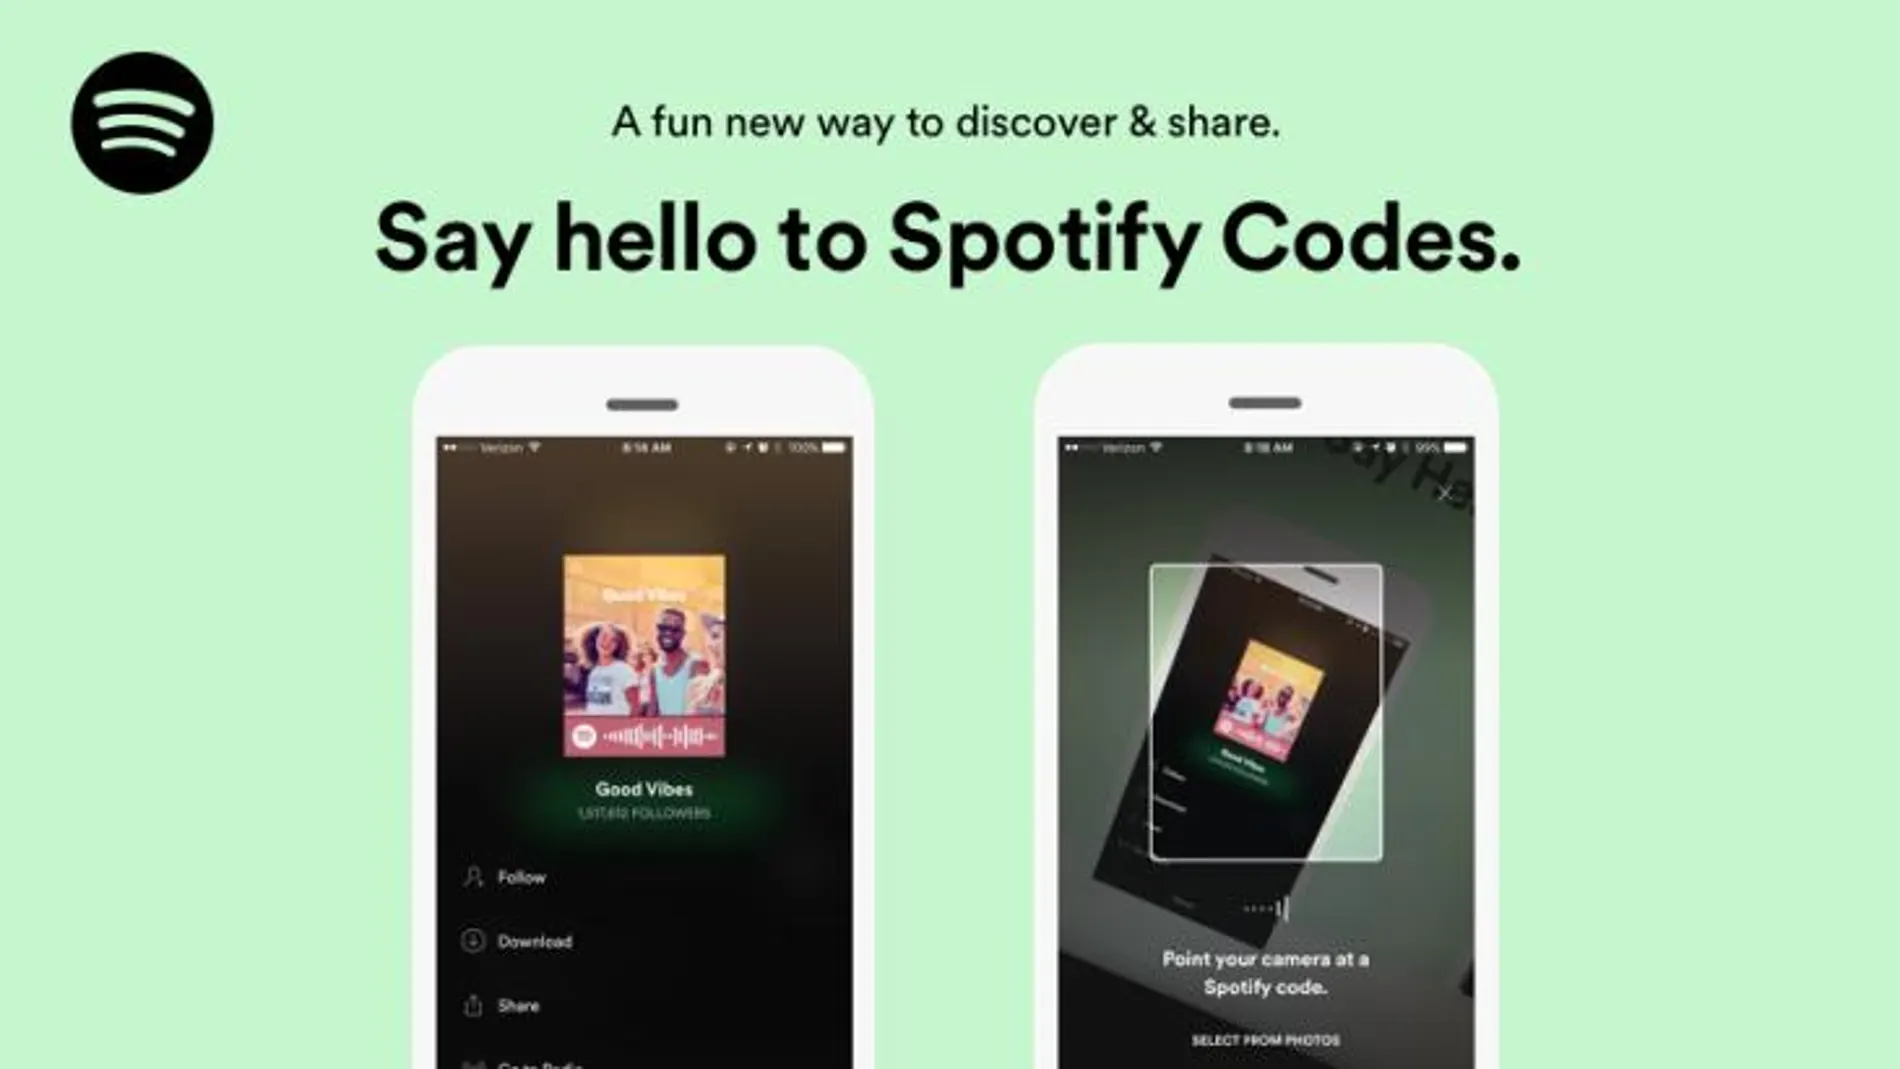 La nueva aplicación Spotify Codes